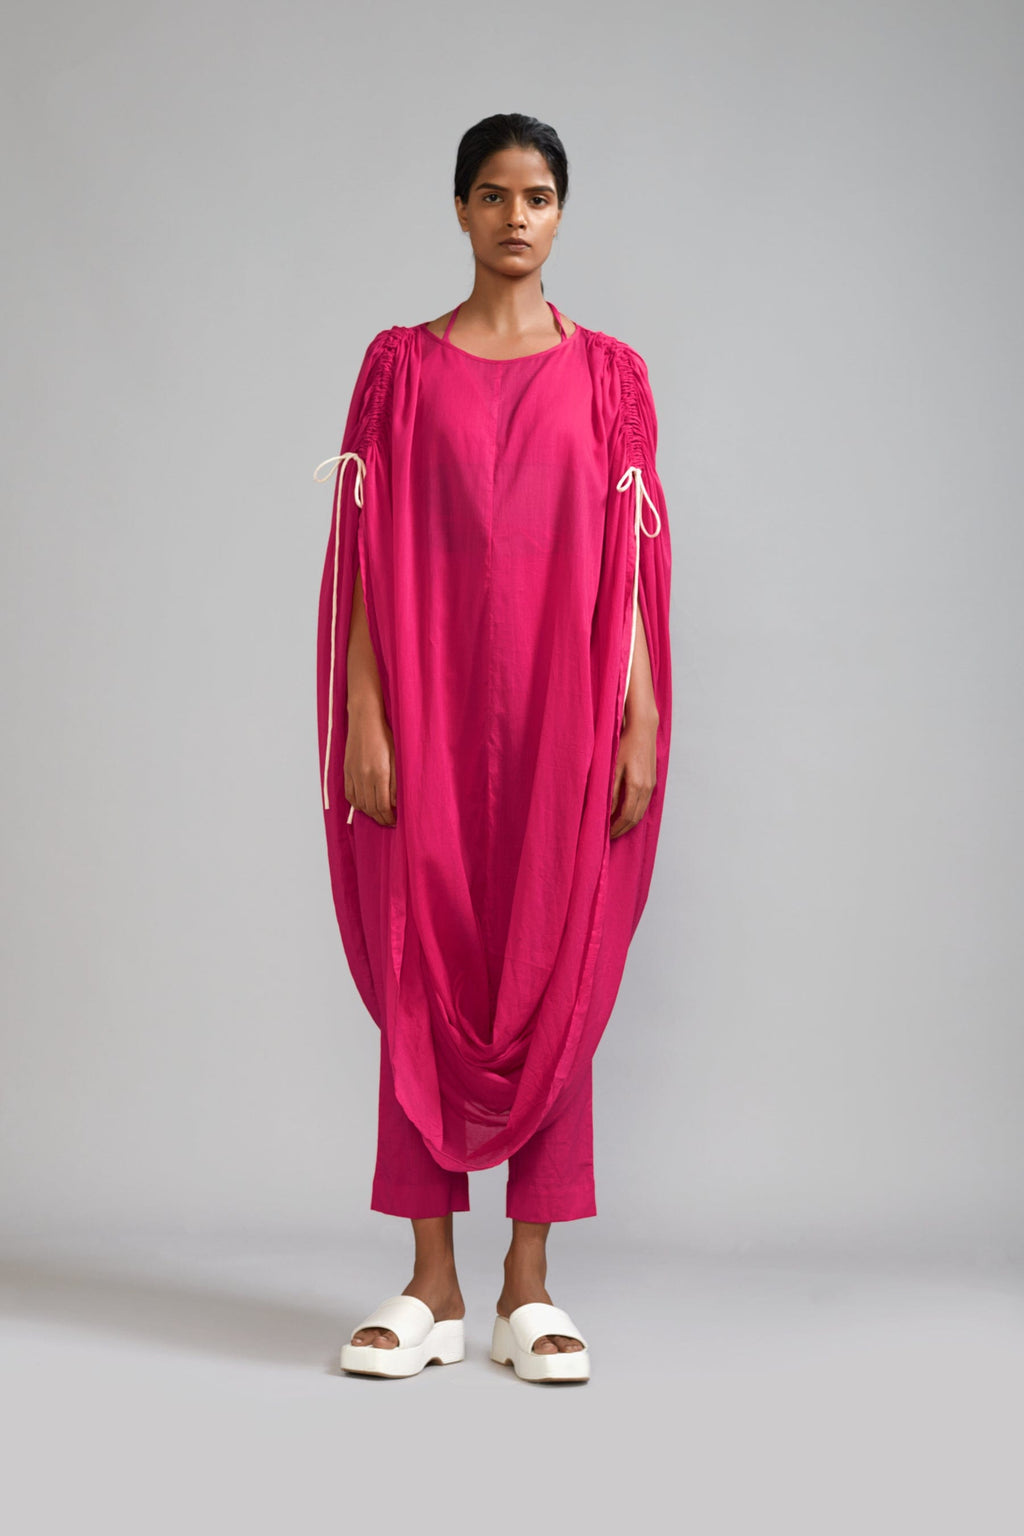 Mati Separates XS Pink Gathered Cowl Tunic Set (3 PCS)